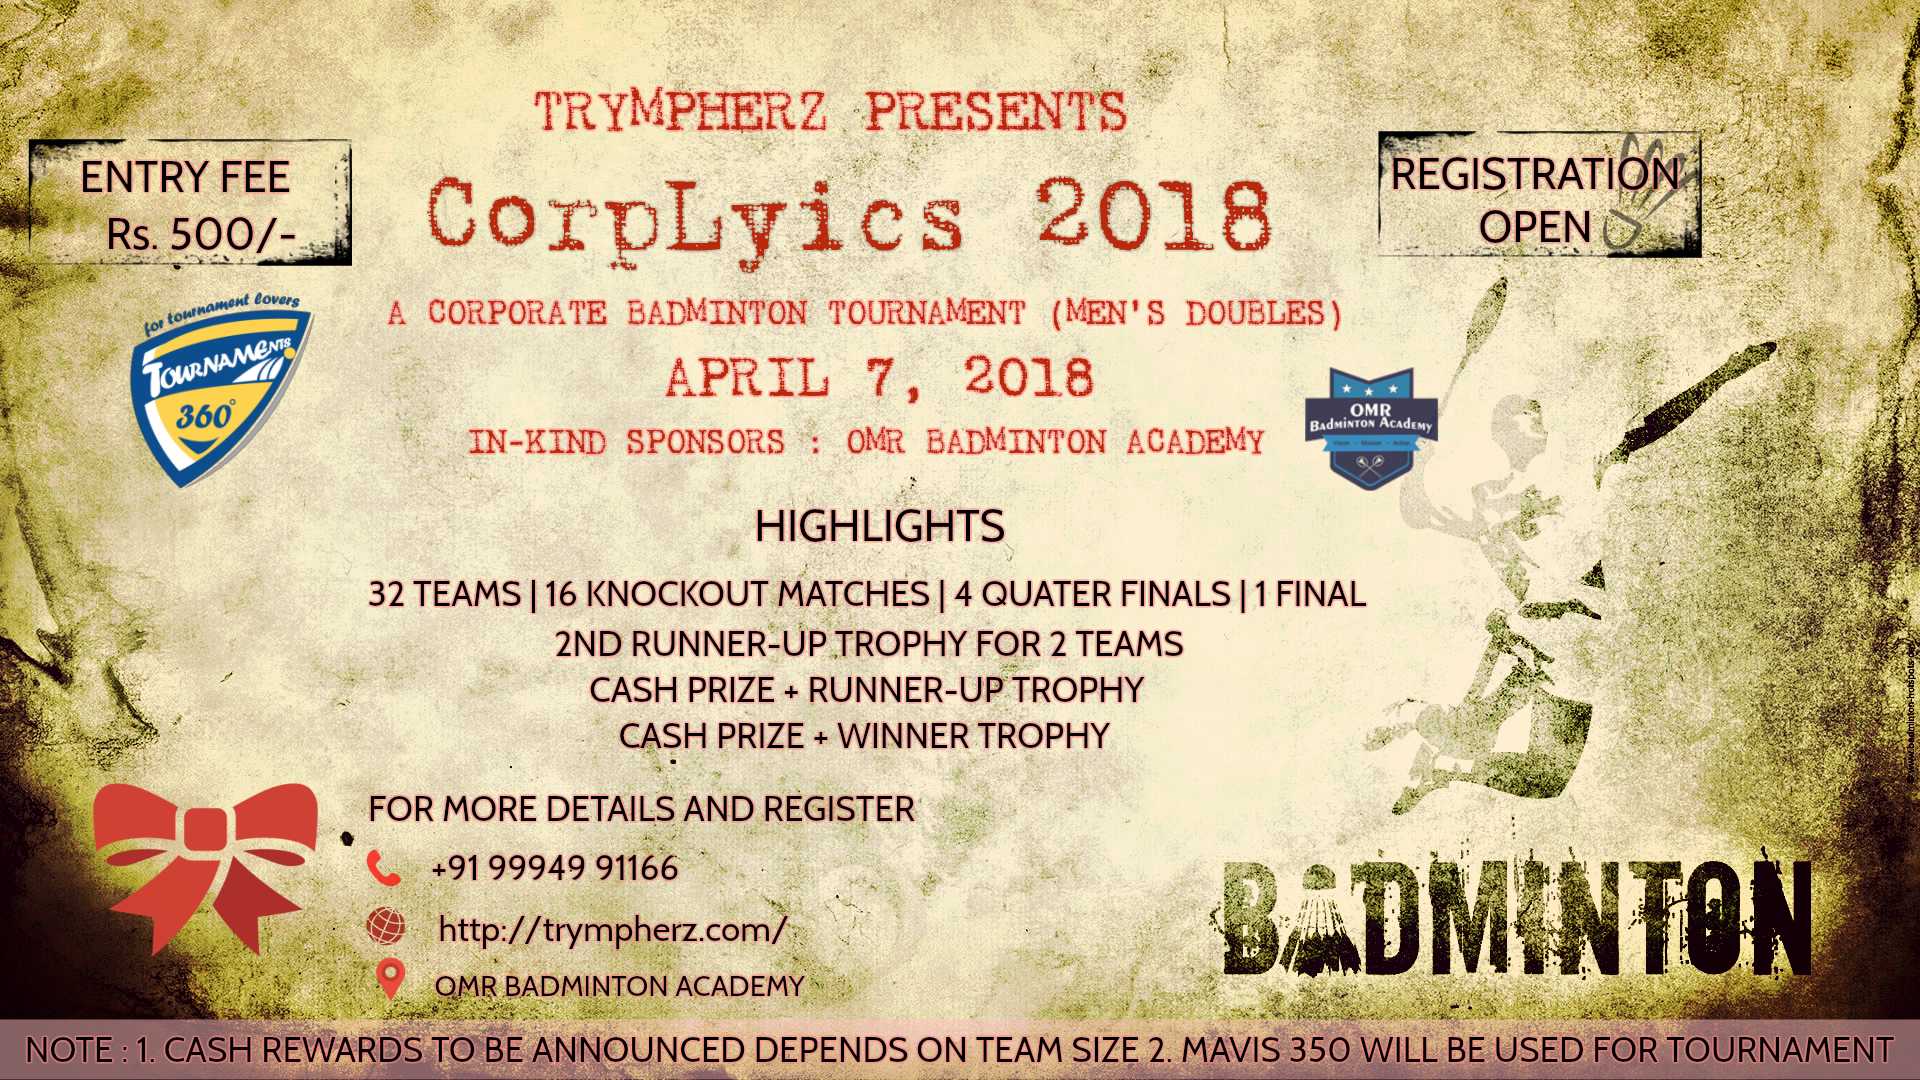 Corplyics 2018 Corporate Badminton Tournament